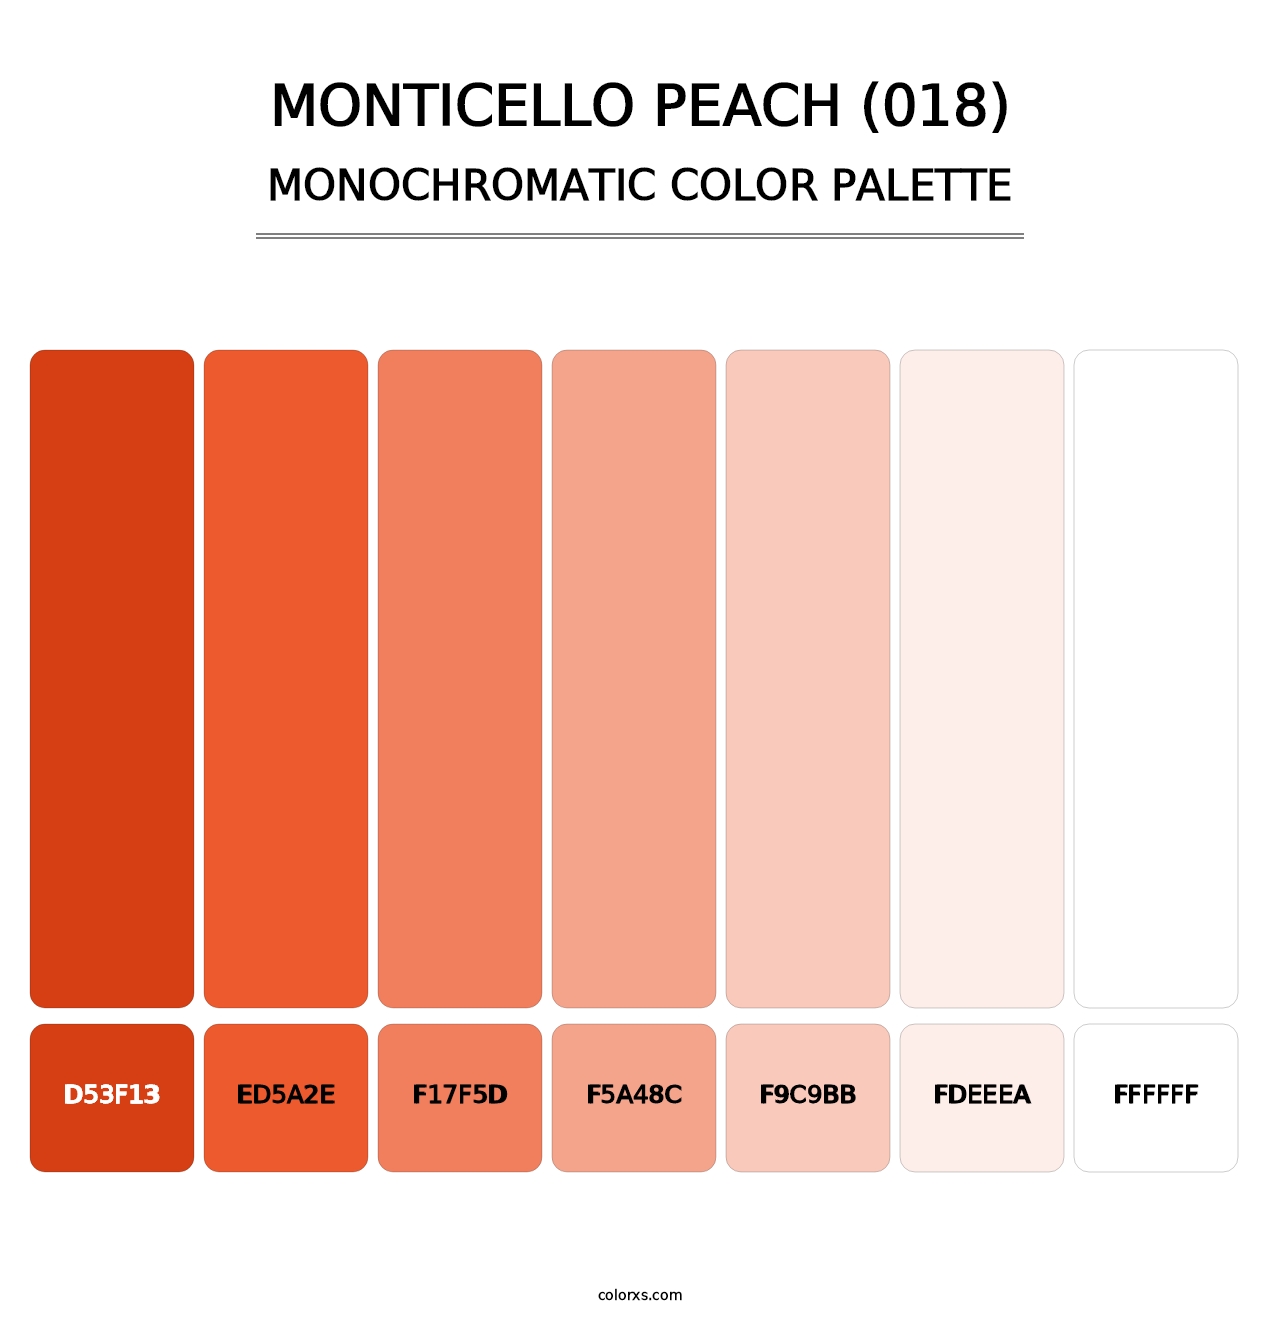 Monticello Peach (018) - Monochromatic Color Palette